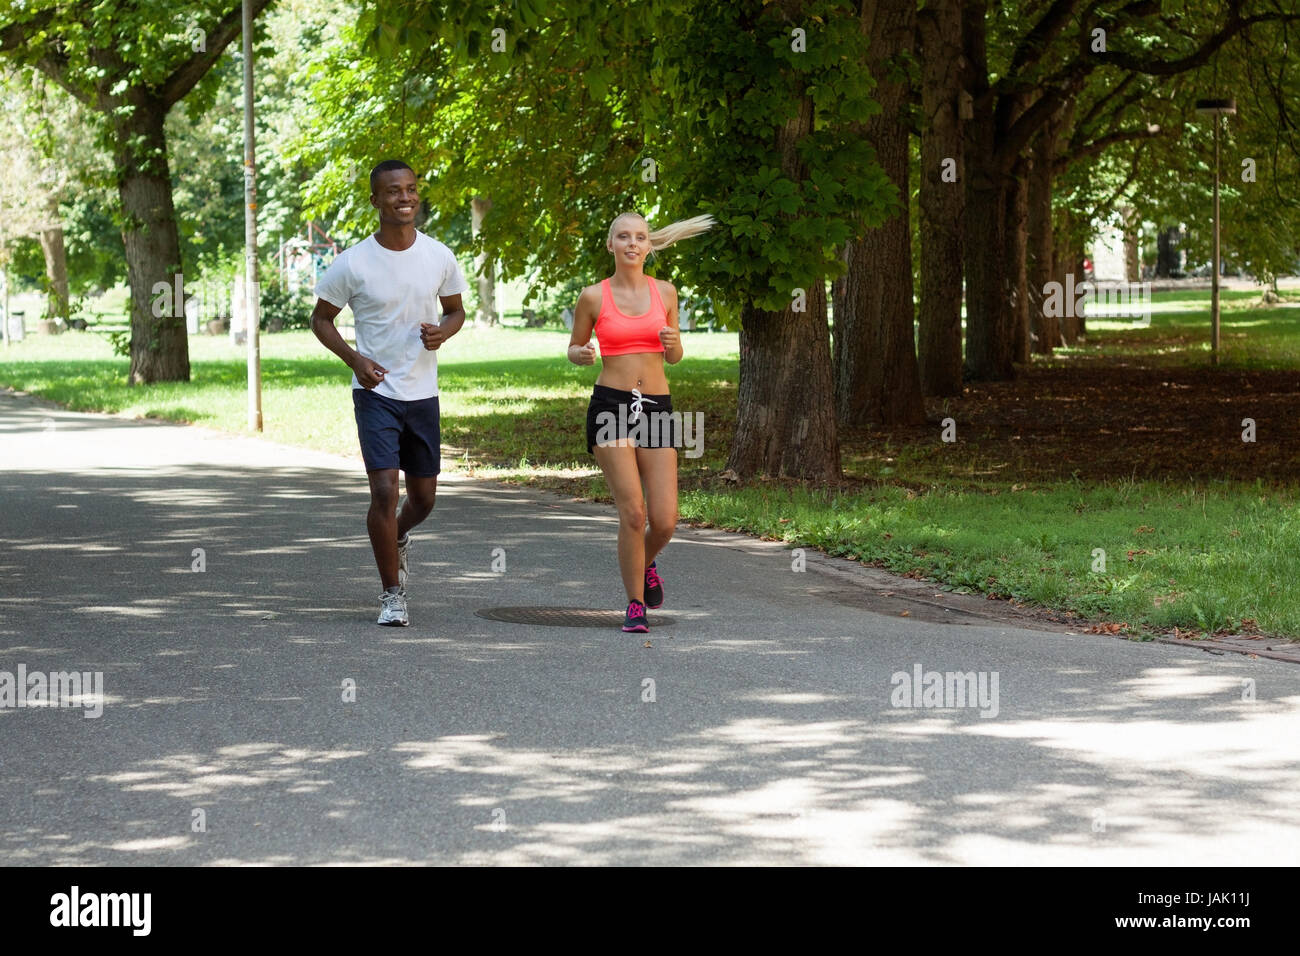 zwei sportliche junge jogger laufend im park im sommer training gesundheit Stock Photo